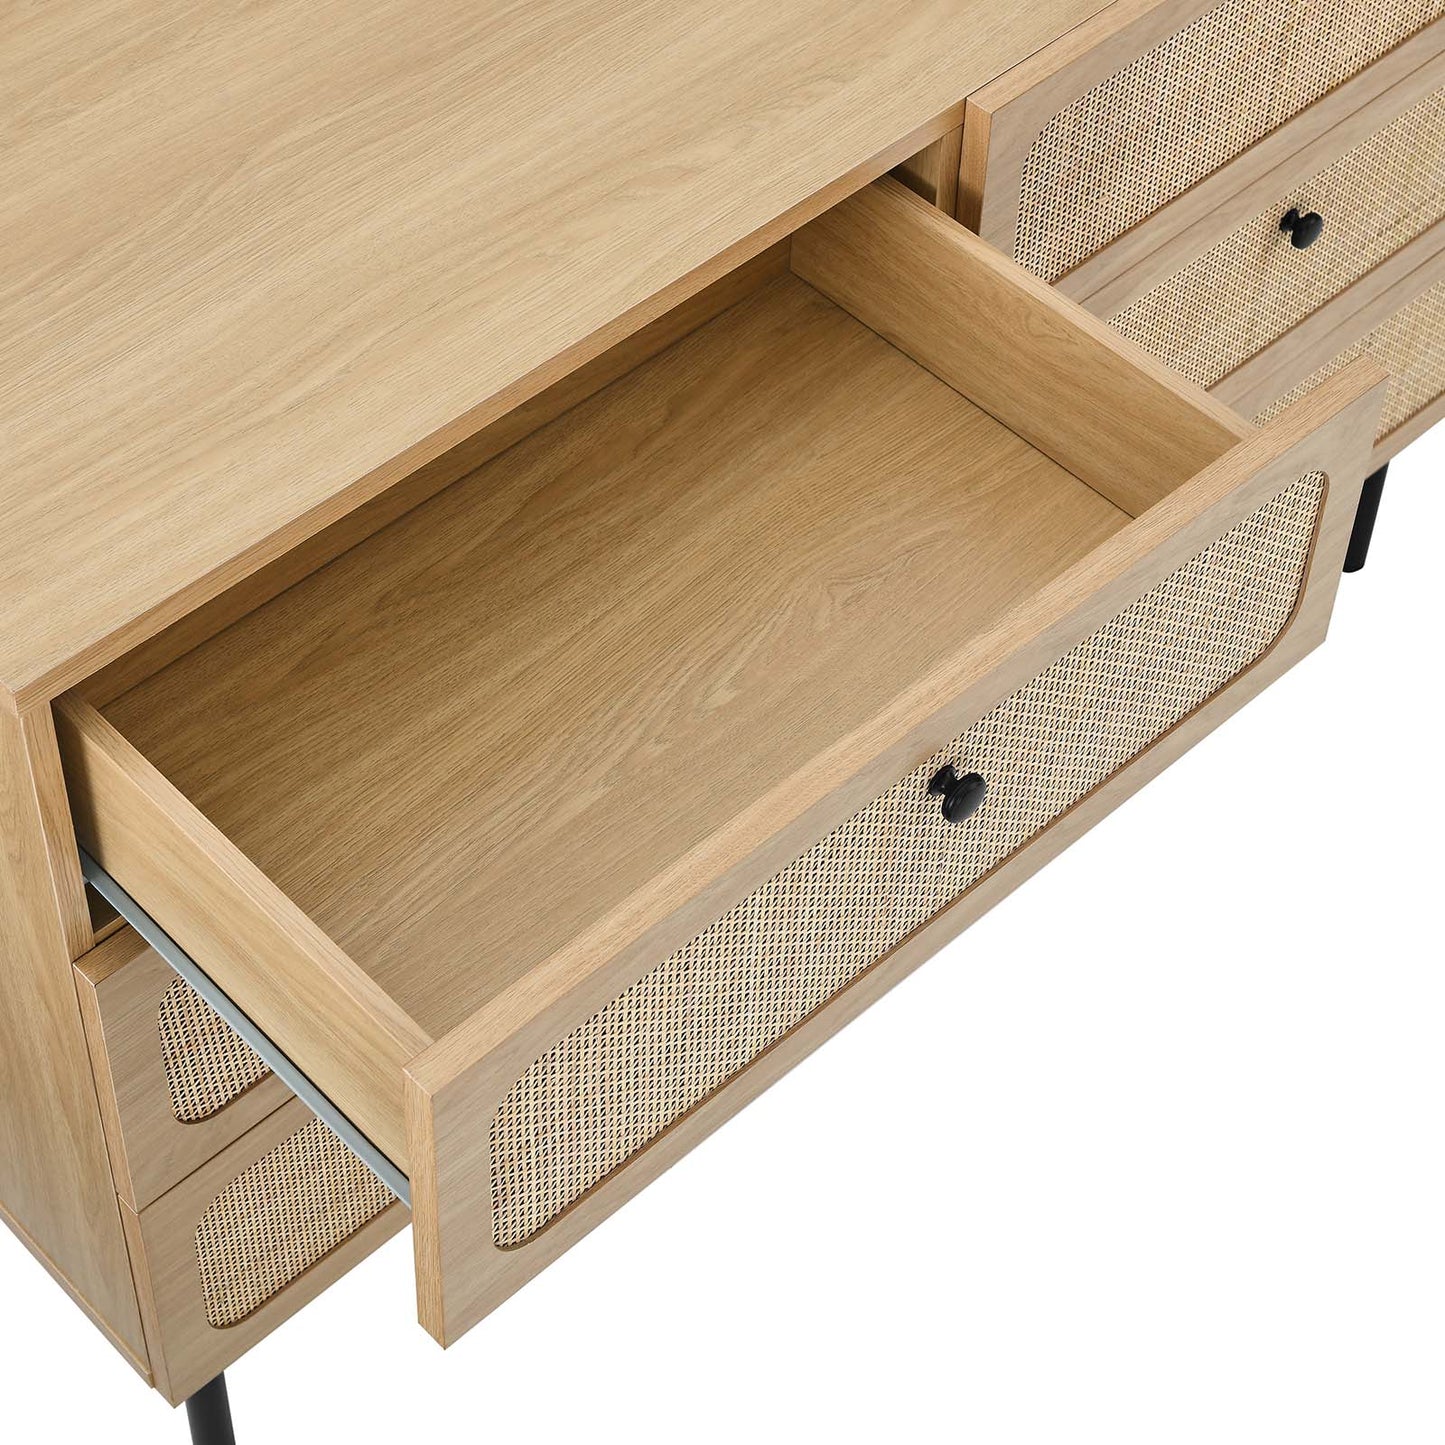 Chaucer 6-Drawer Compact Dresser Oak MOD-7066-OAK